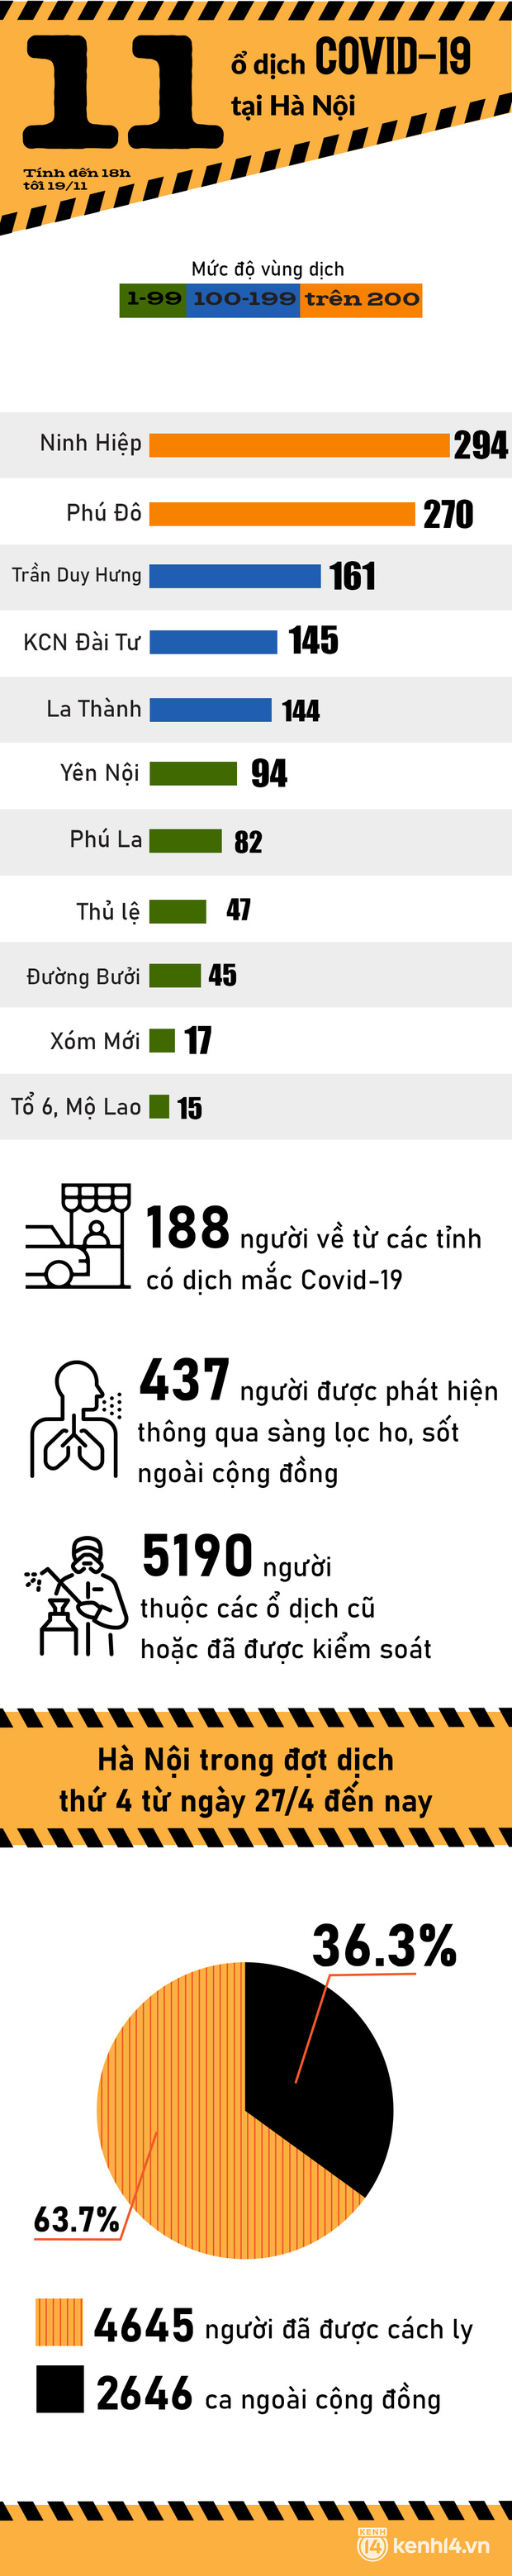 11 ổ dịch Covid-19 đang diễn tiến phức tạp tại Hà Nội, liên tiếp nhiều ngày vượt mốc 200 ca nhiễm-1